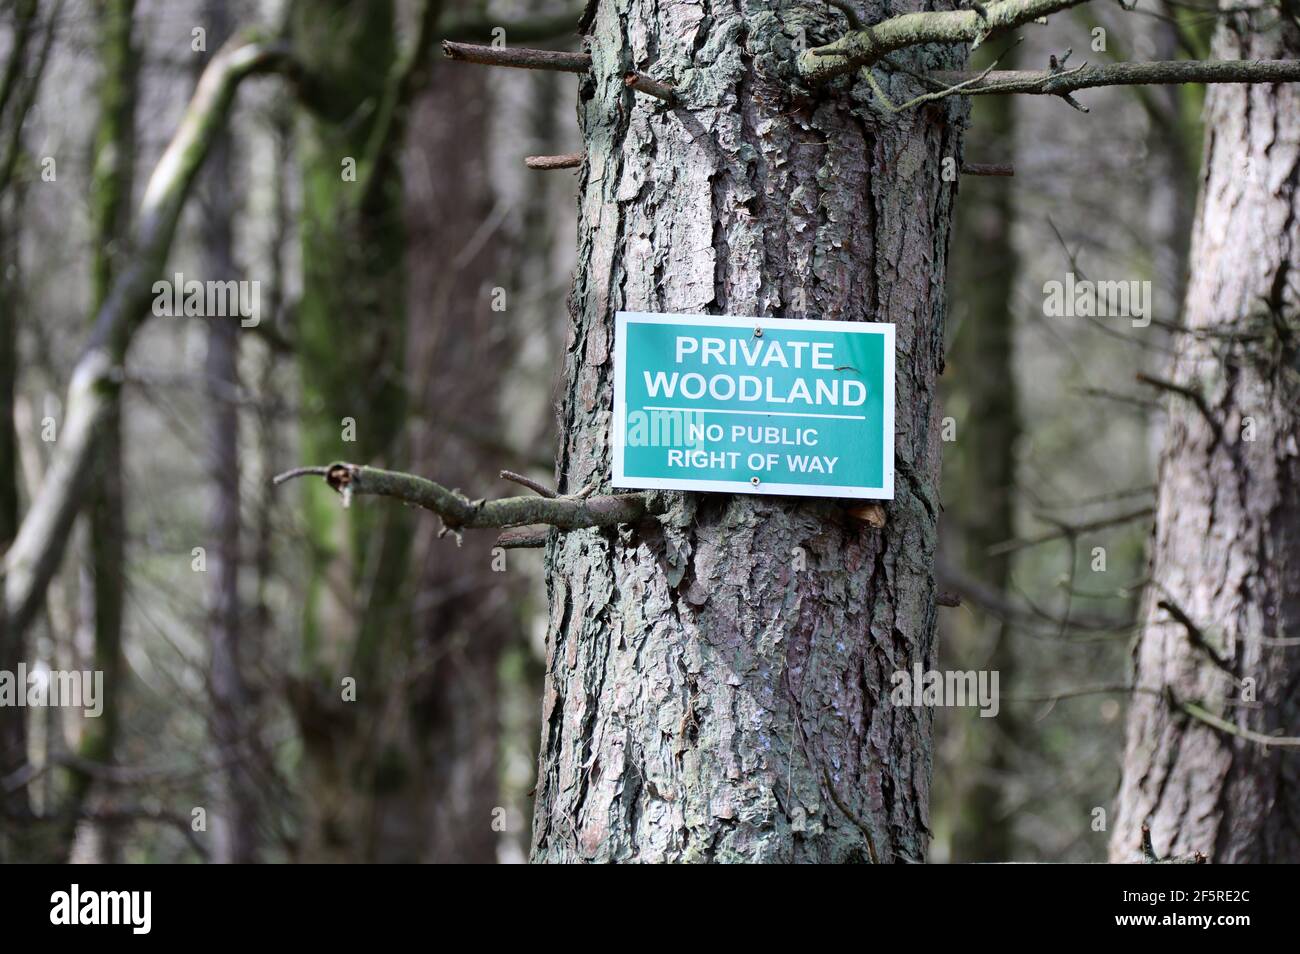 Privado Woodland sin derecho público de vía firme en Gran Bretaña Foto de stock